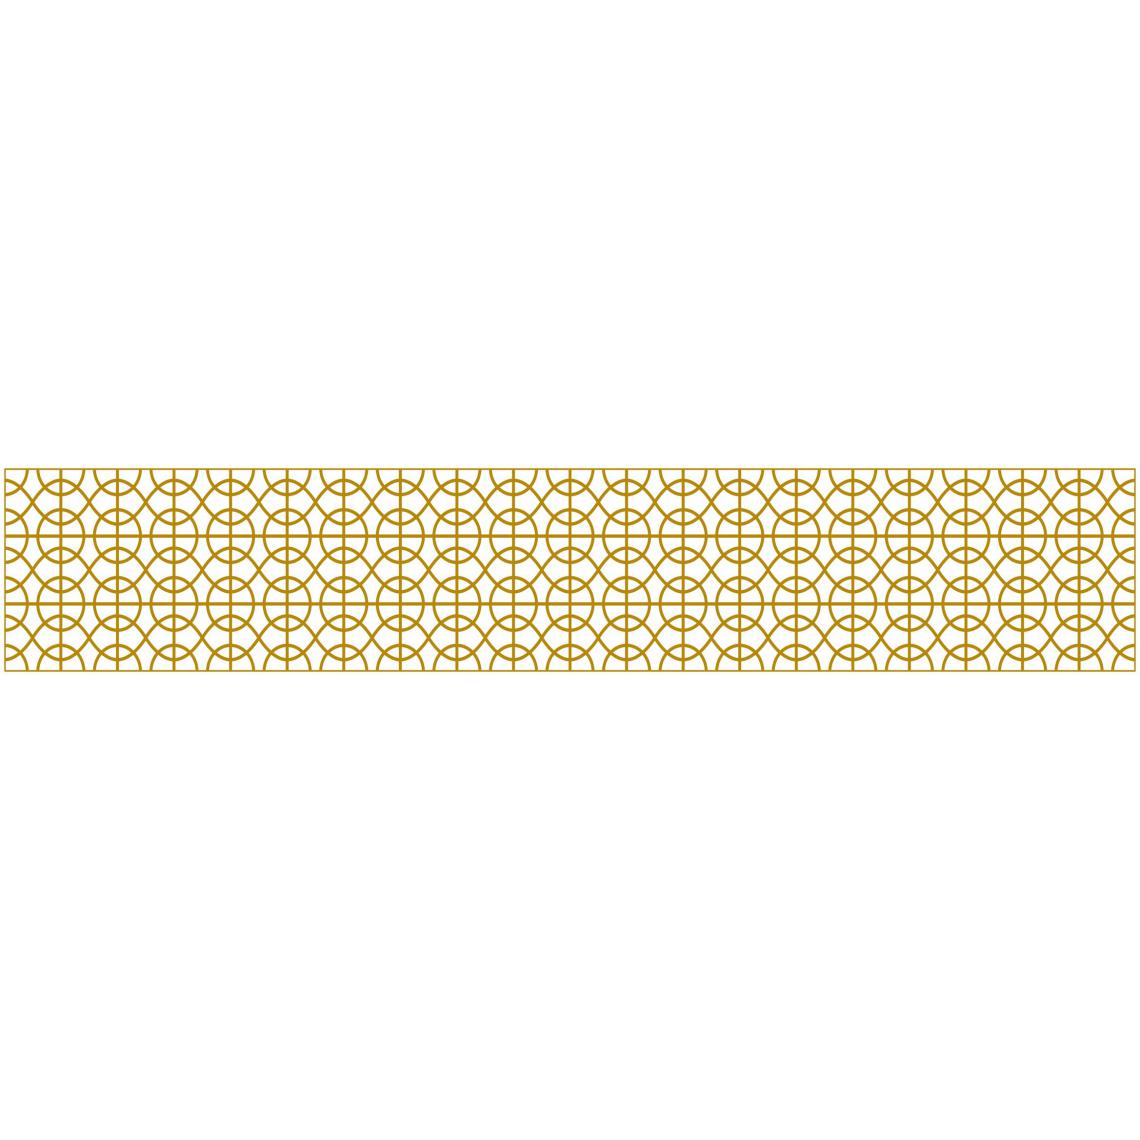 Alter - Chemin de cuisine, 100% Made in Italy, Tapis antitache avec impression numérique, Tapis antidérapant et lavable, Modèle Annagrazia, 180x52 cm - Tapis